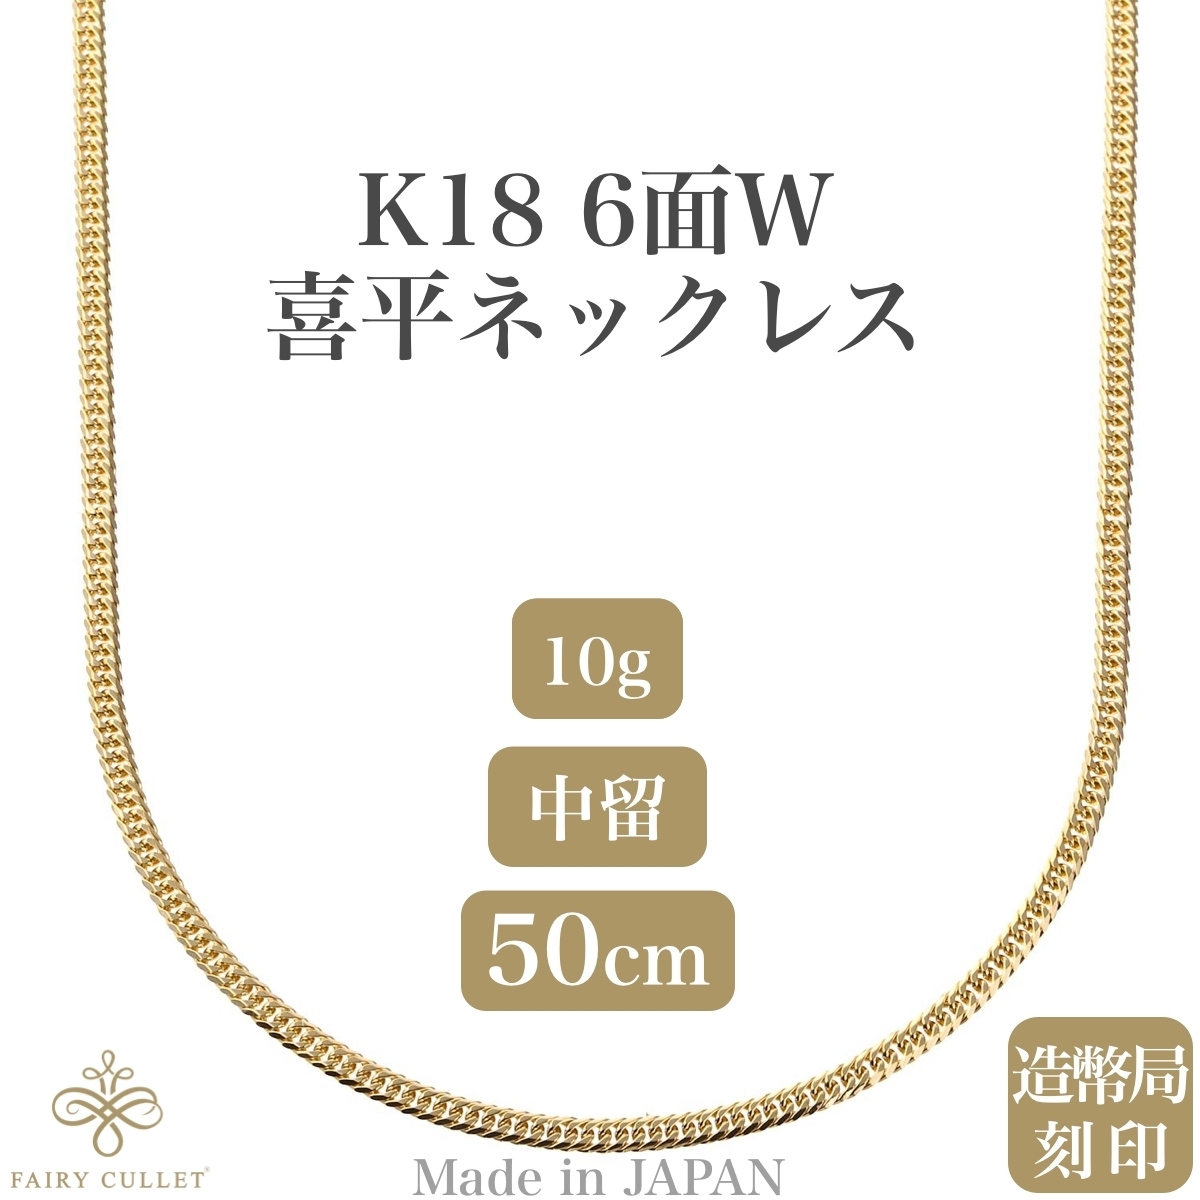 18金ネックレス K18 6面W喜平チェーン 日本製 検定印 10g 50cm 中留め